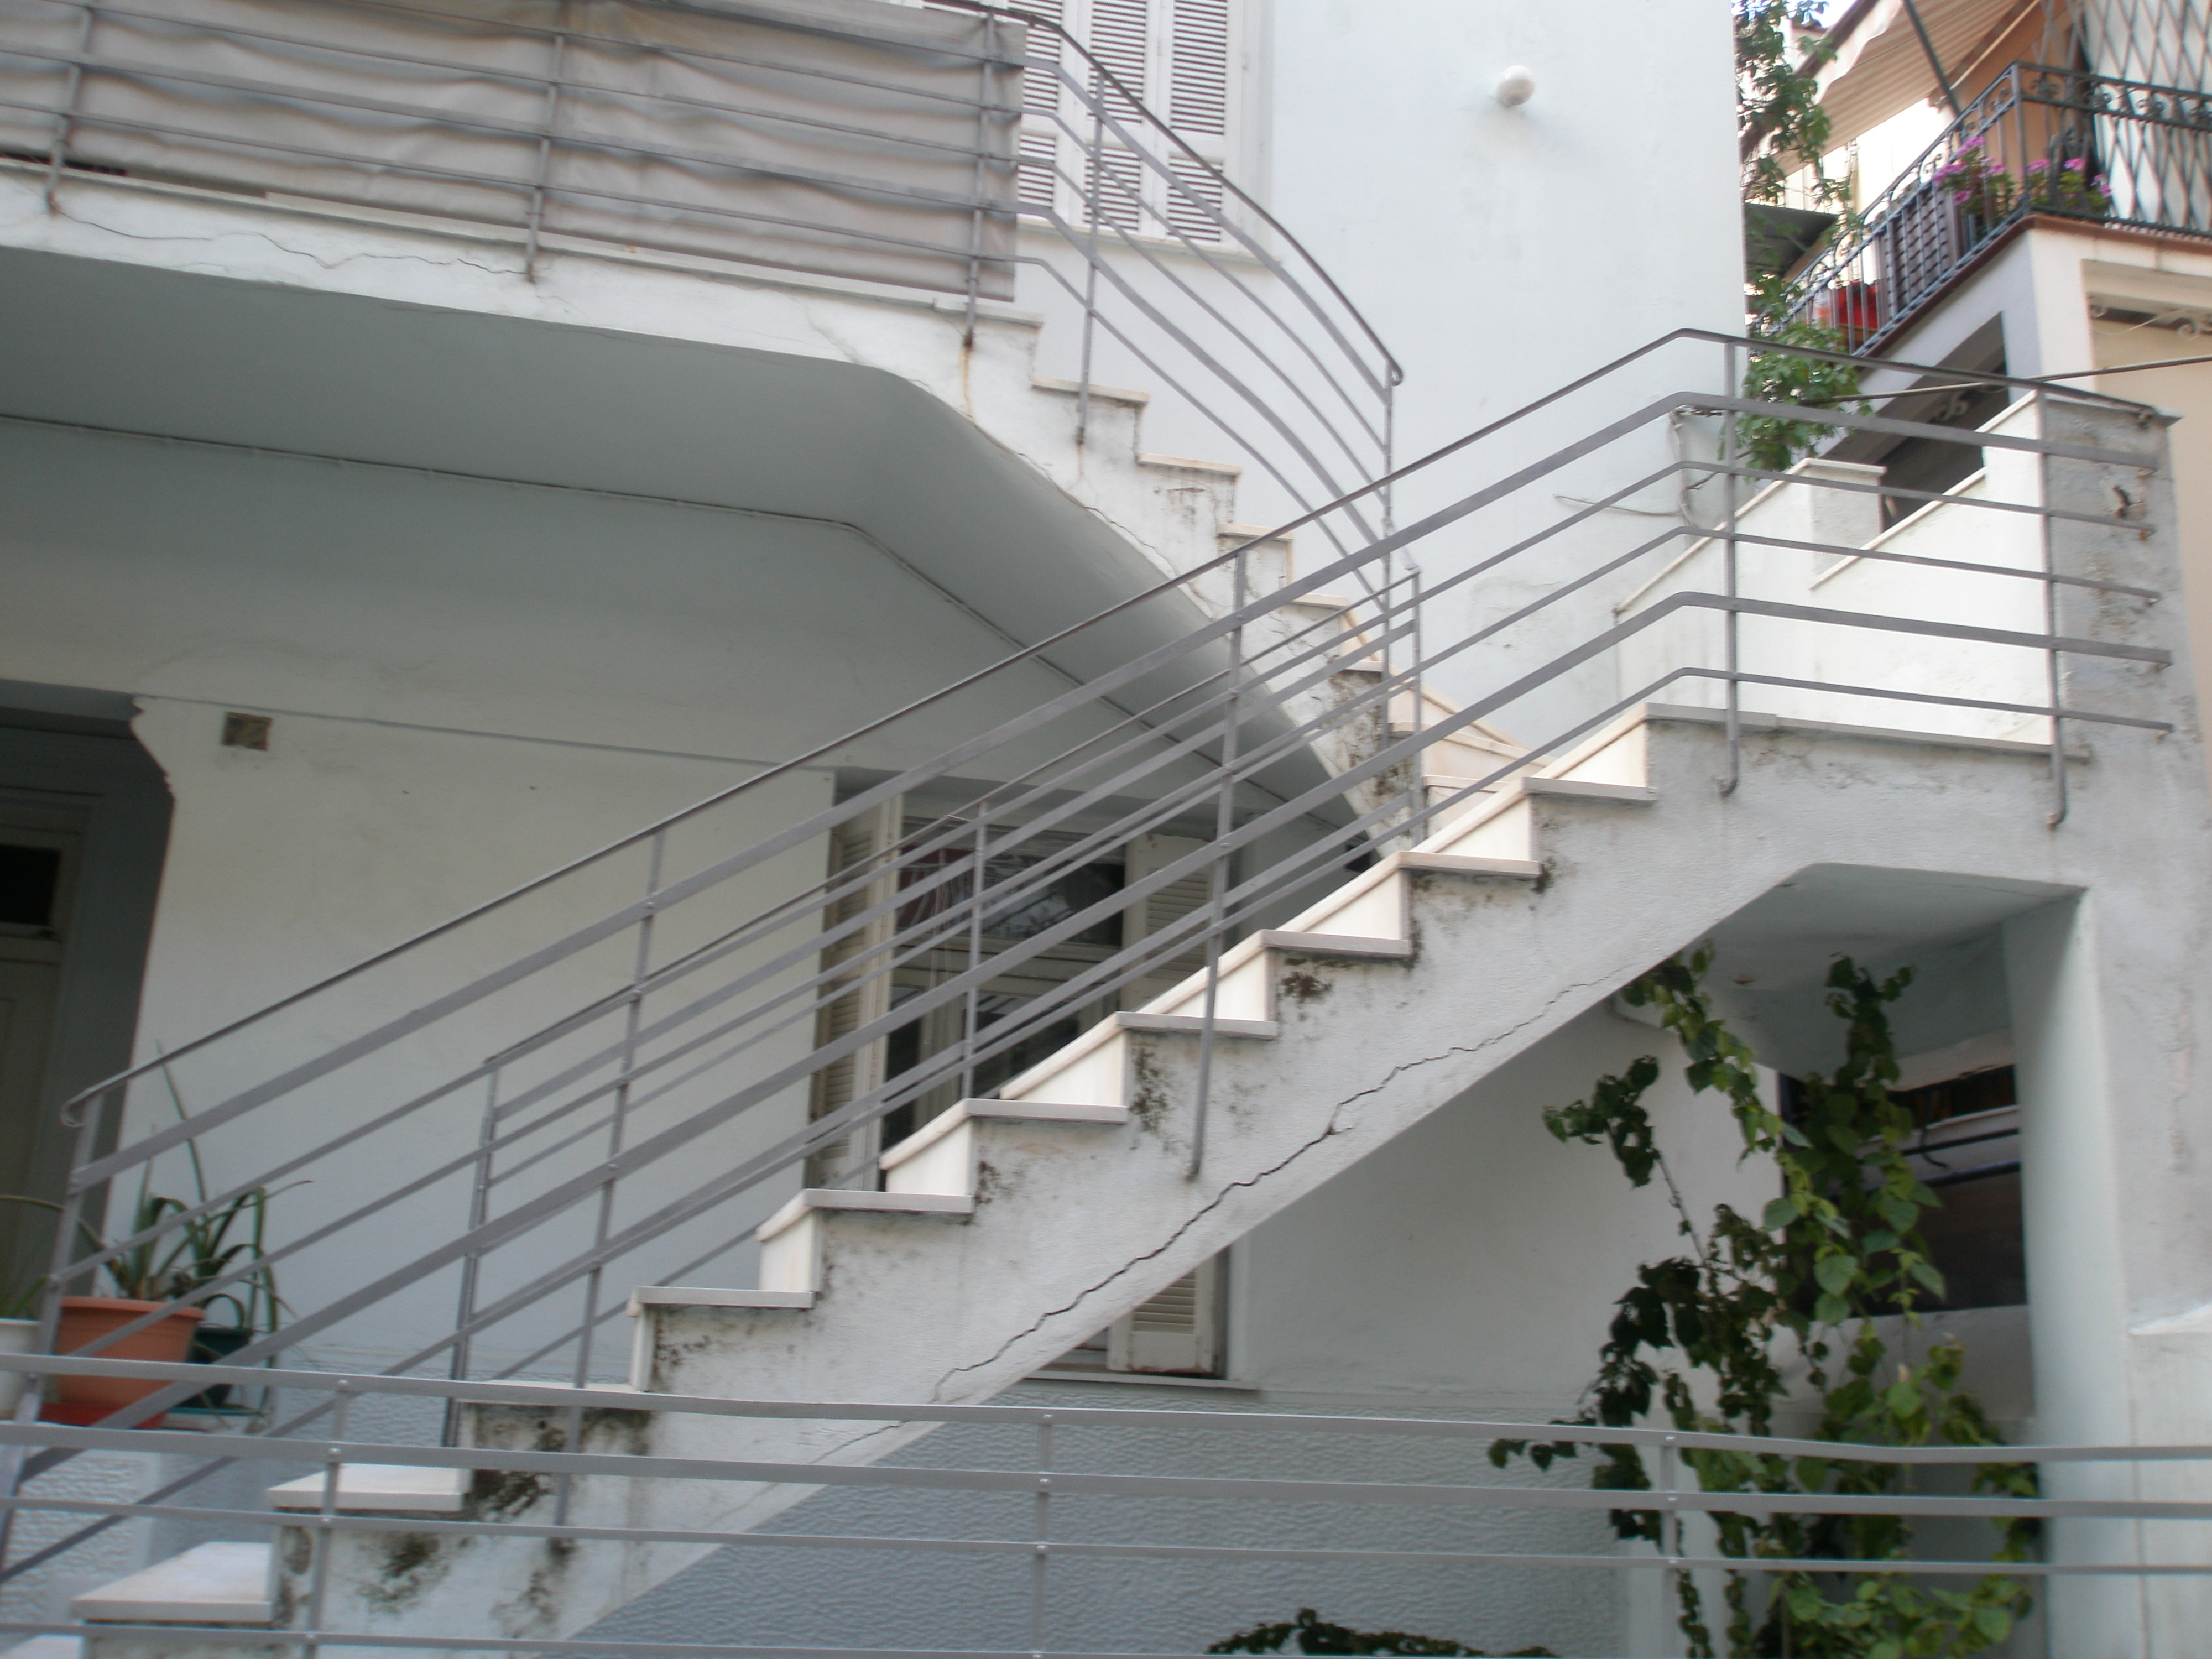 External stairway view